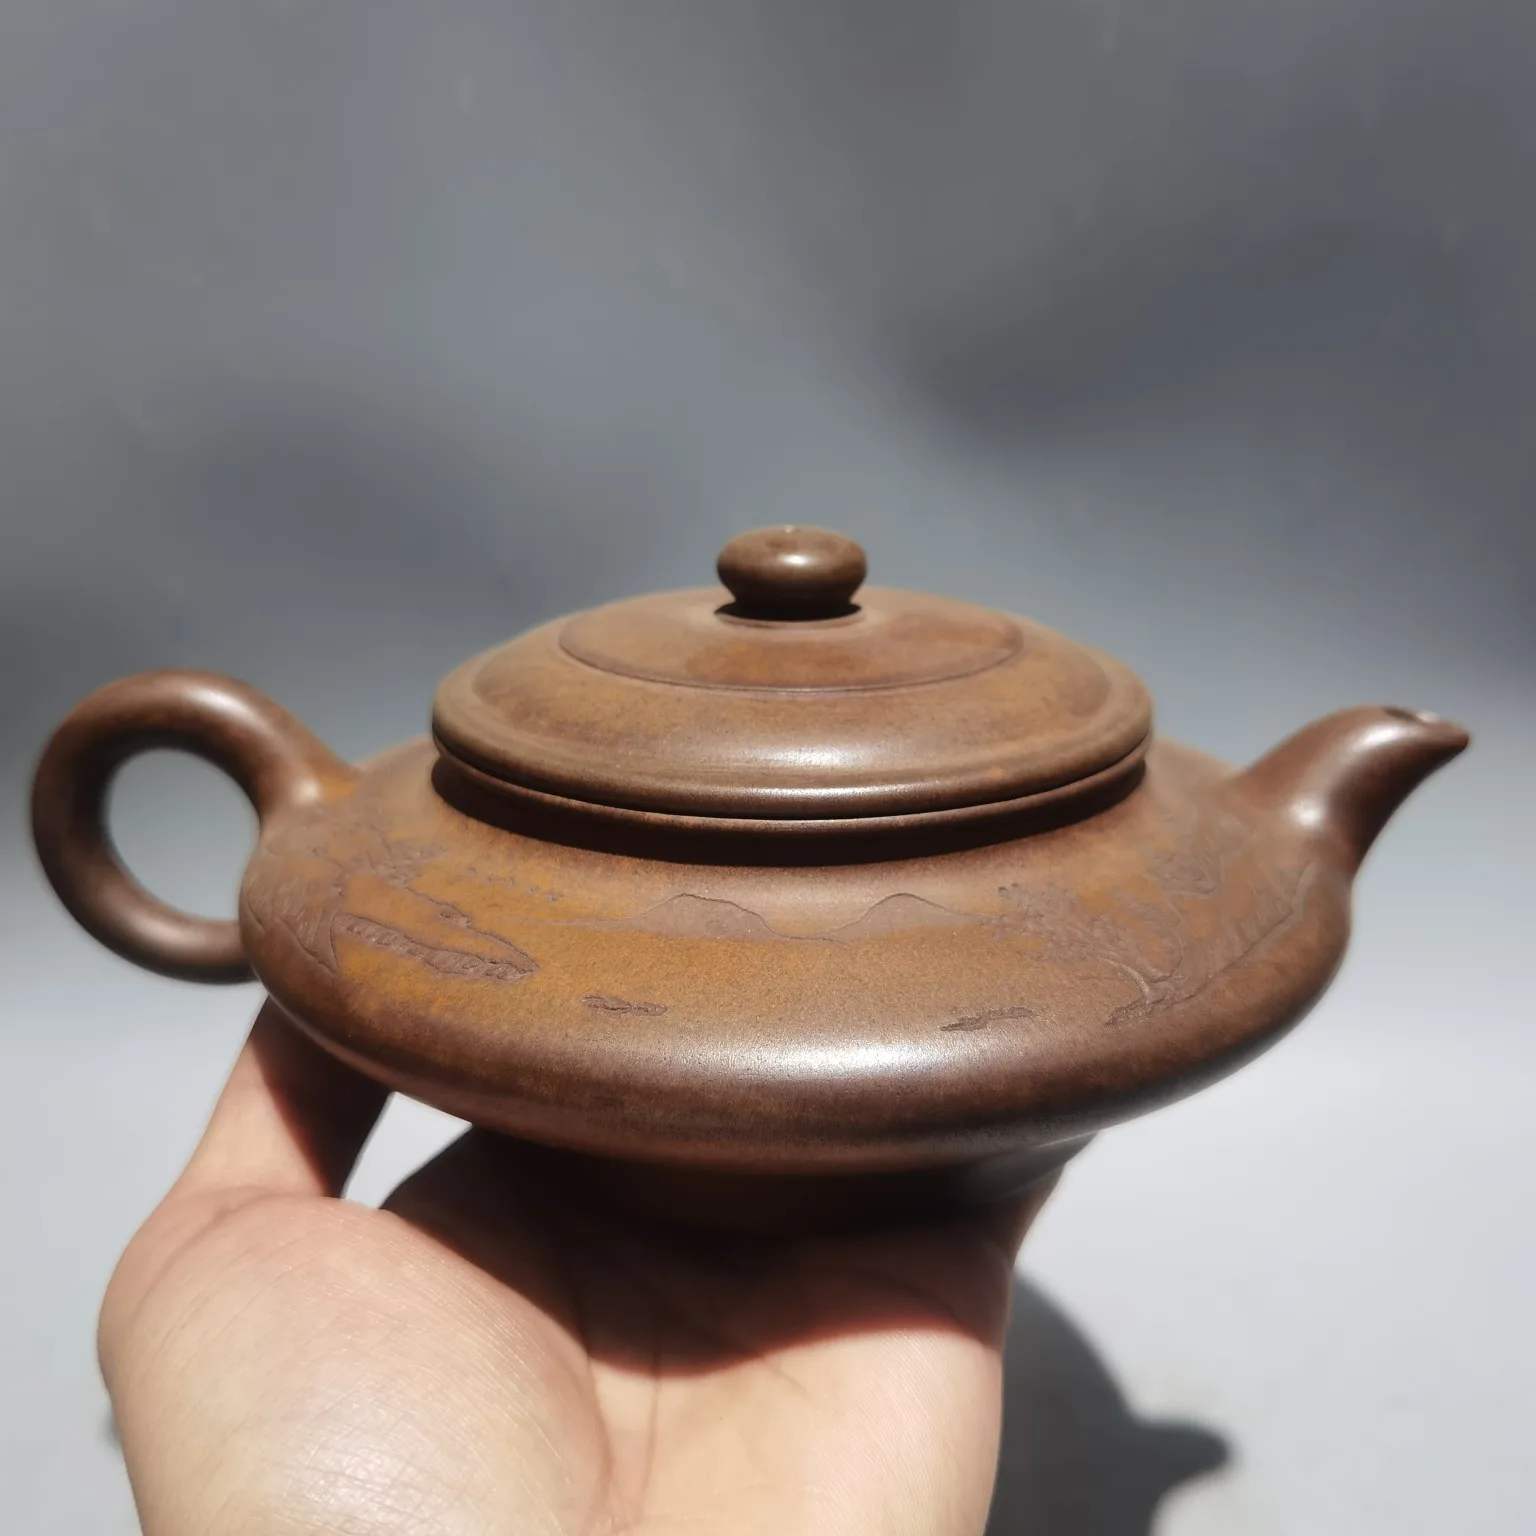 

Фарфоровая посуда Yixing Zisha 8 дюймов, крученый вручную в виде обжига для воды, плоский горшок, ландшафтный необработанный Рудный чайник из красной глины, для приготовления чая, для офиса